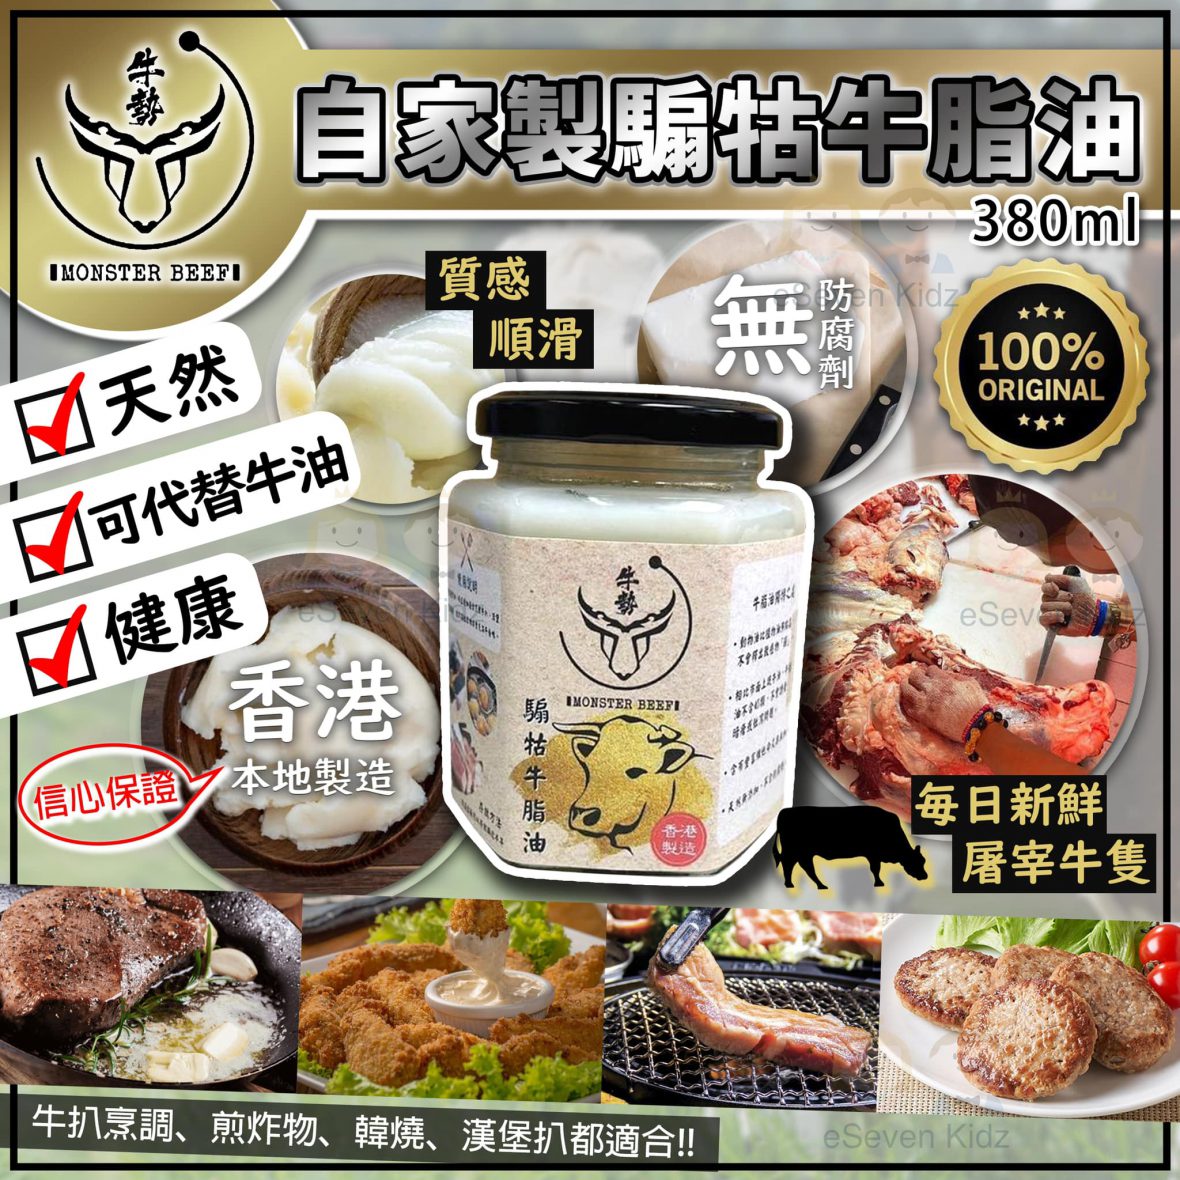 香港品牌 牛勢 騸牯牛 – 牛脂油 380ml